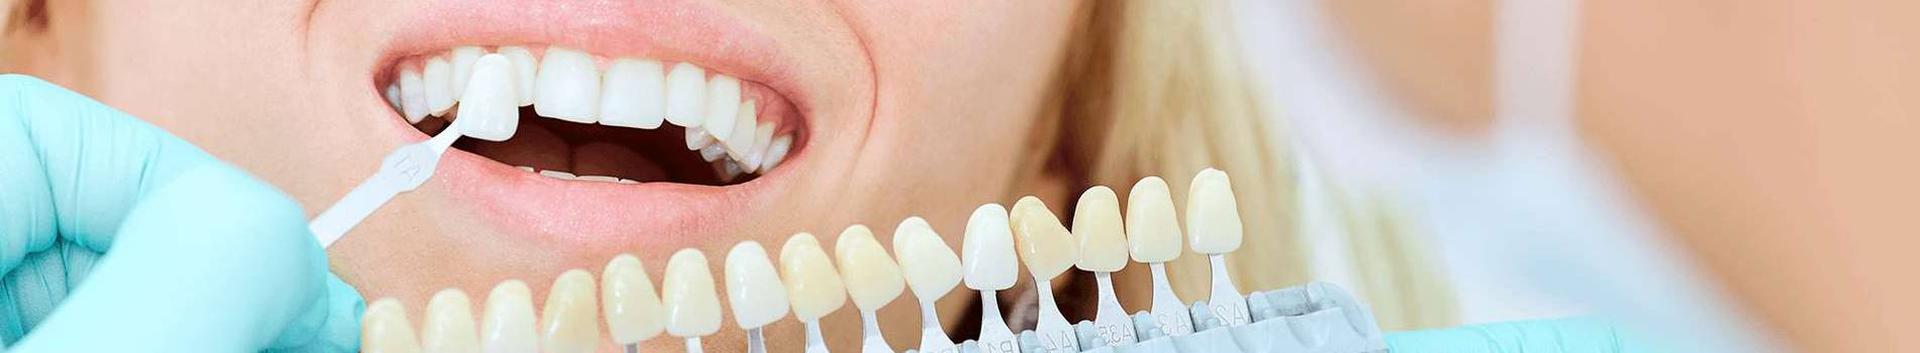 Patsiendikeskne hambaravi Ruta Ottesson Hambaravi visiooniks on pakkuda kaasaegset patsiendikeskset hambaraviteenust. Oleme loonud oma patsientidega usaldusliku suhte nende hammaste tervishoiuks. Arvestame raviplaani koostamisel patsientide soove ja võimalusi. Seetõttu on meie patsientide rahulolu osutatud teenusega väga hea. Meie hambaarstid kuuluvad ka mõlemad Eesti Hambaarstide Liitu, mis annab võimaluse olla kursis hambaravis toimuvaga ja on abistavaks enda […]